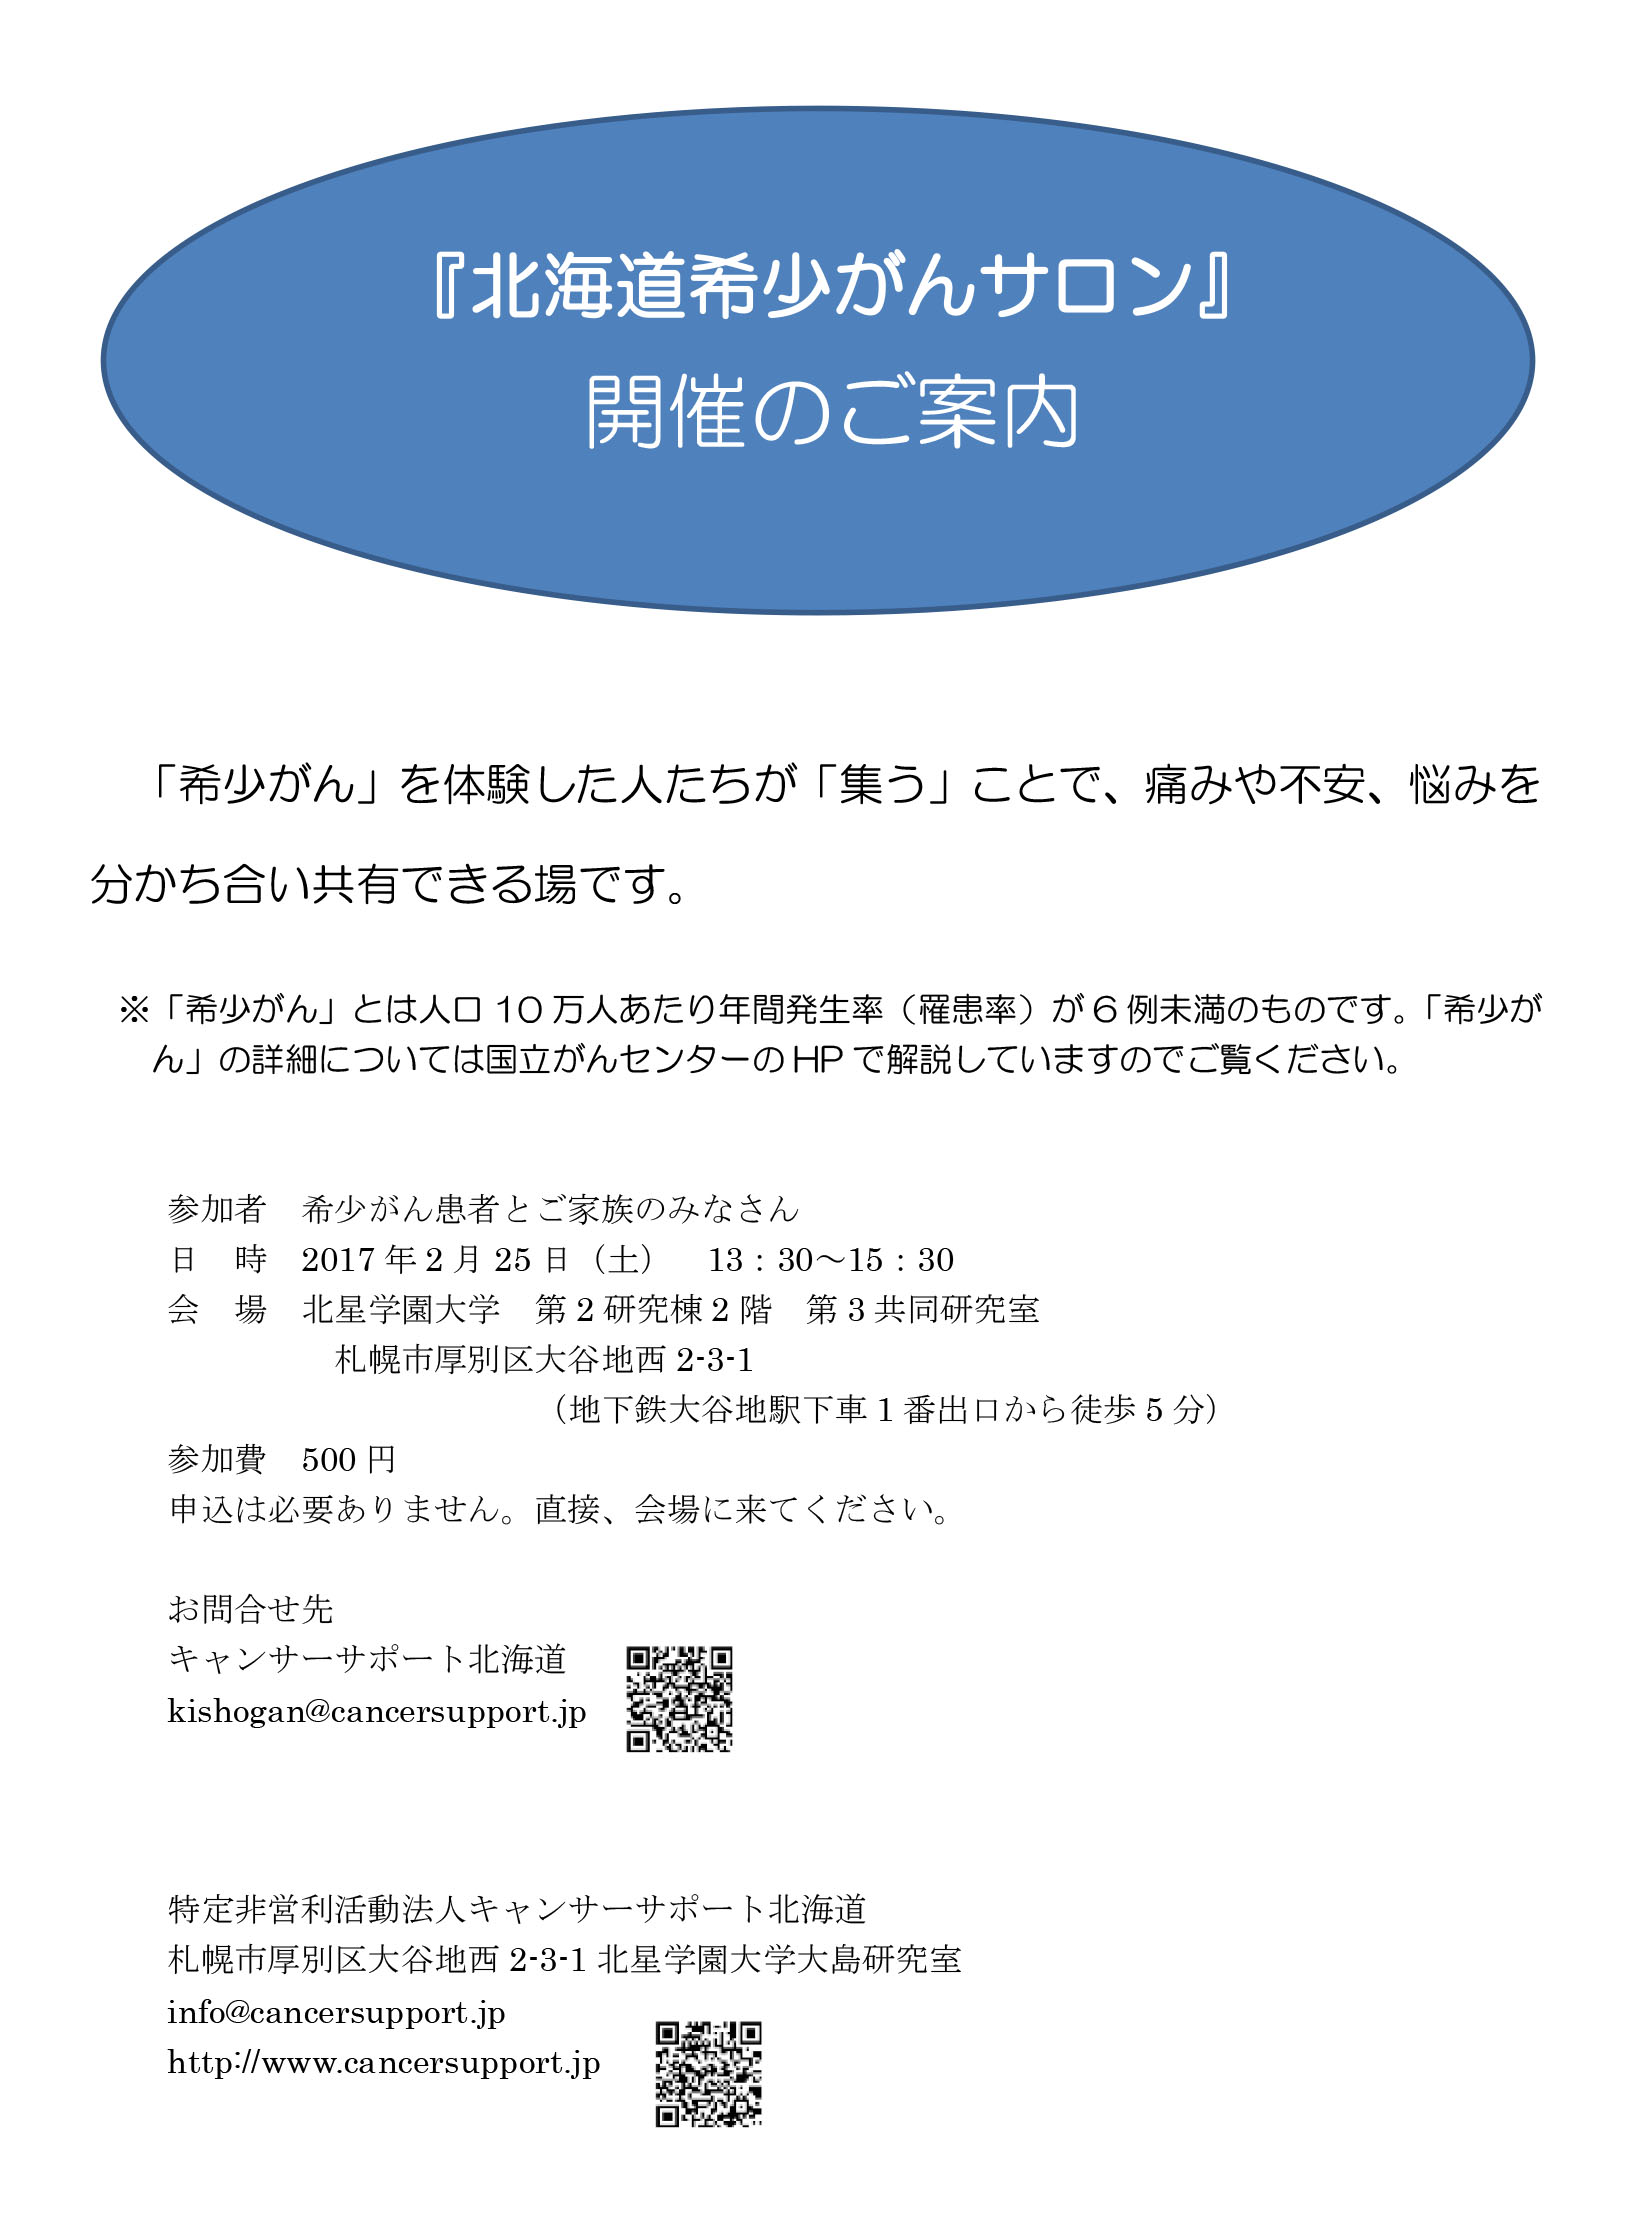 キャンサーサポート北海道にて「希少がんサロン」開催のお知らせ